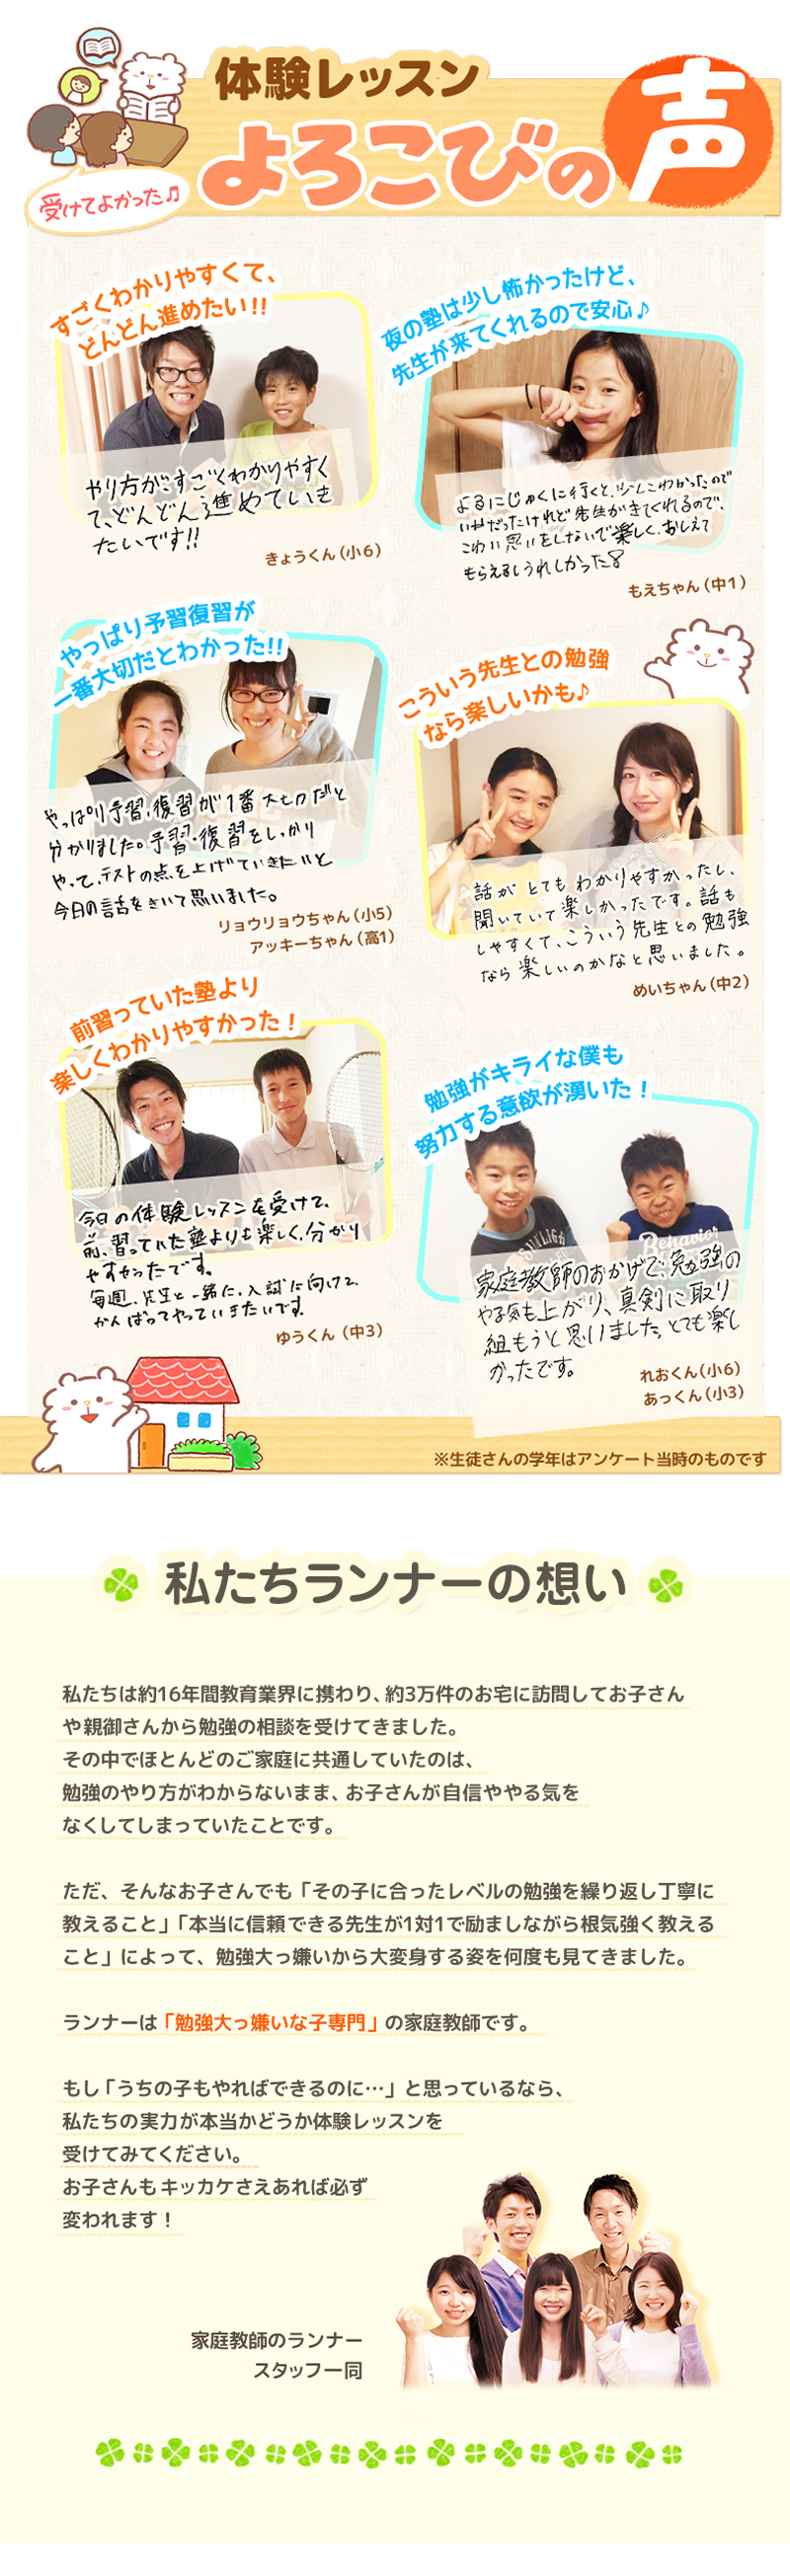 【家庭教師-神奈川県-山北町のお客様のページ】【画像が表示されない場合はページ下部に画像と同じ内容をテキストで掲載していますのでそちらをご覧ください。】